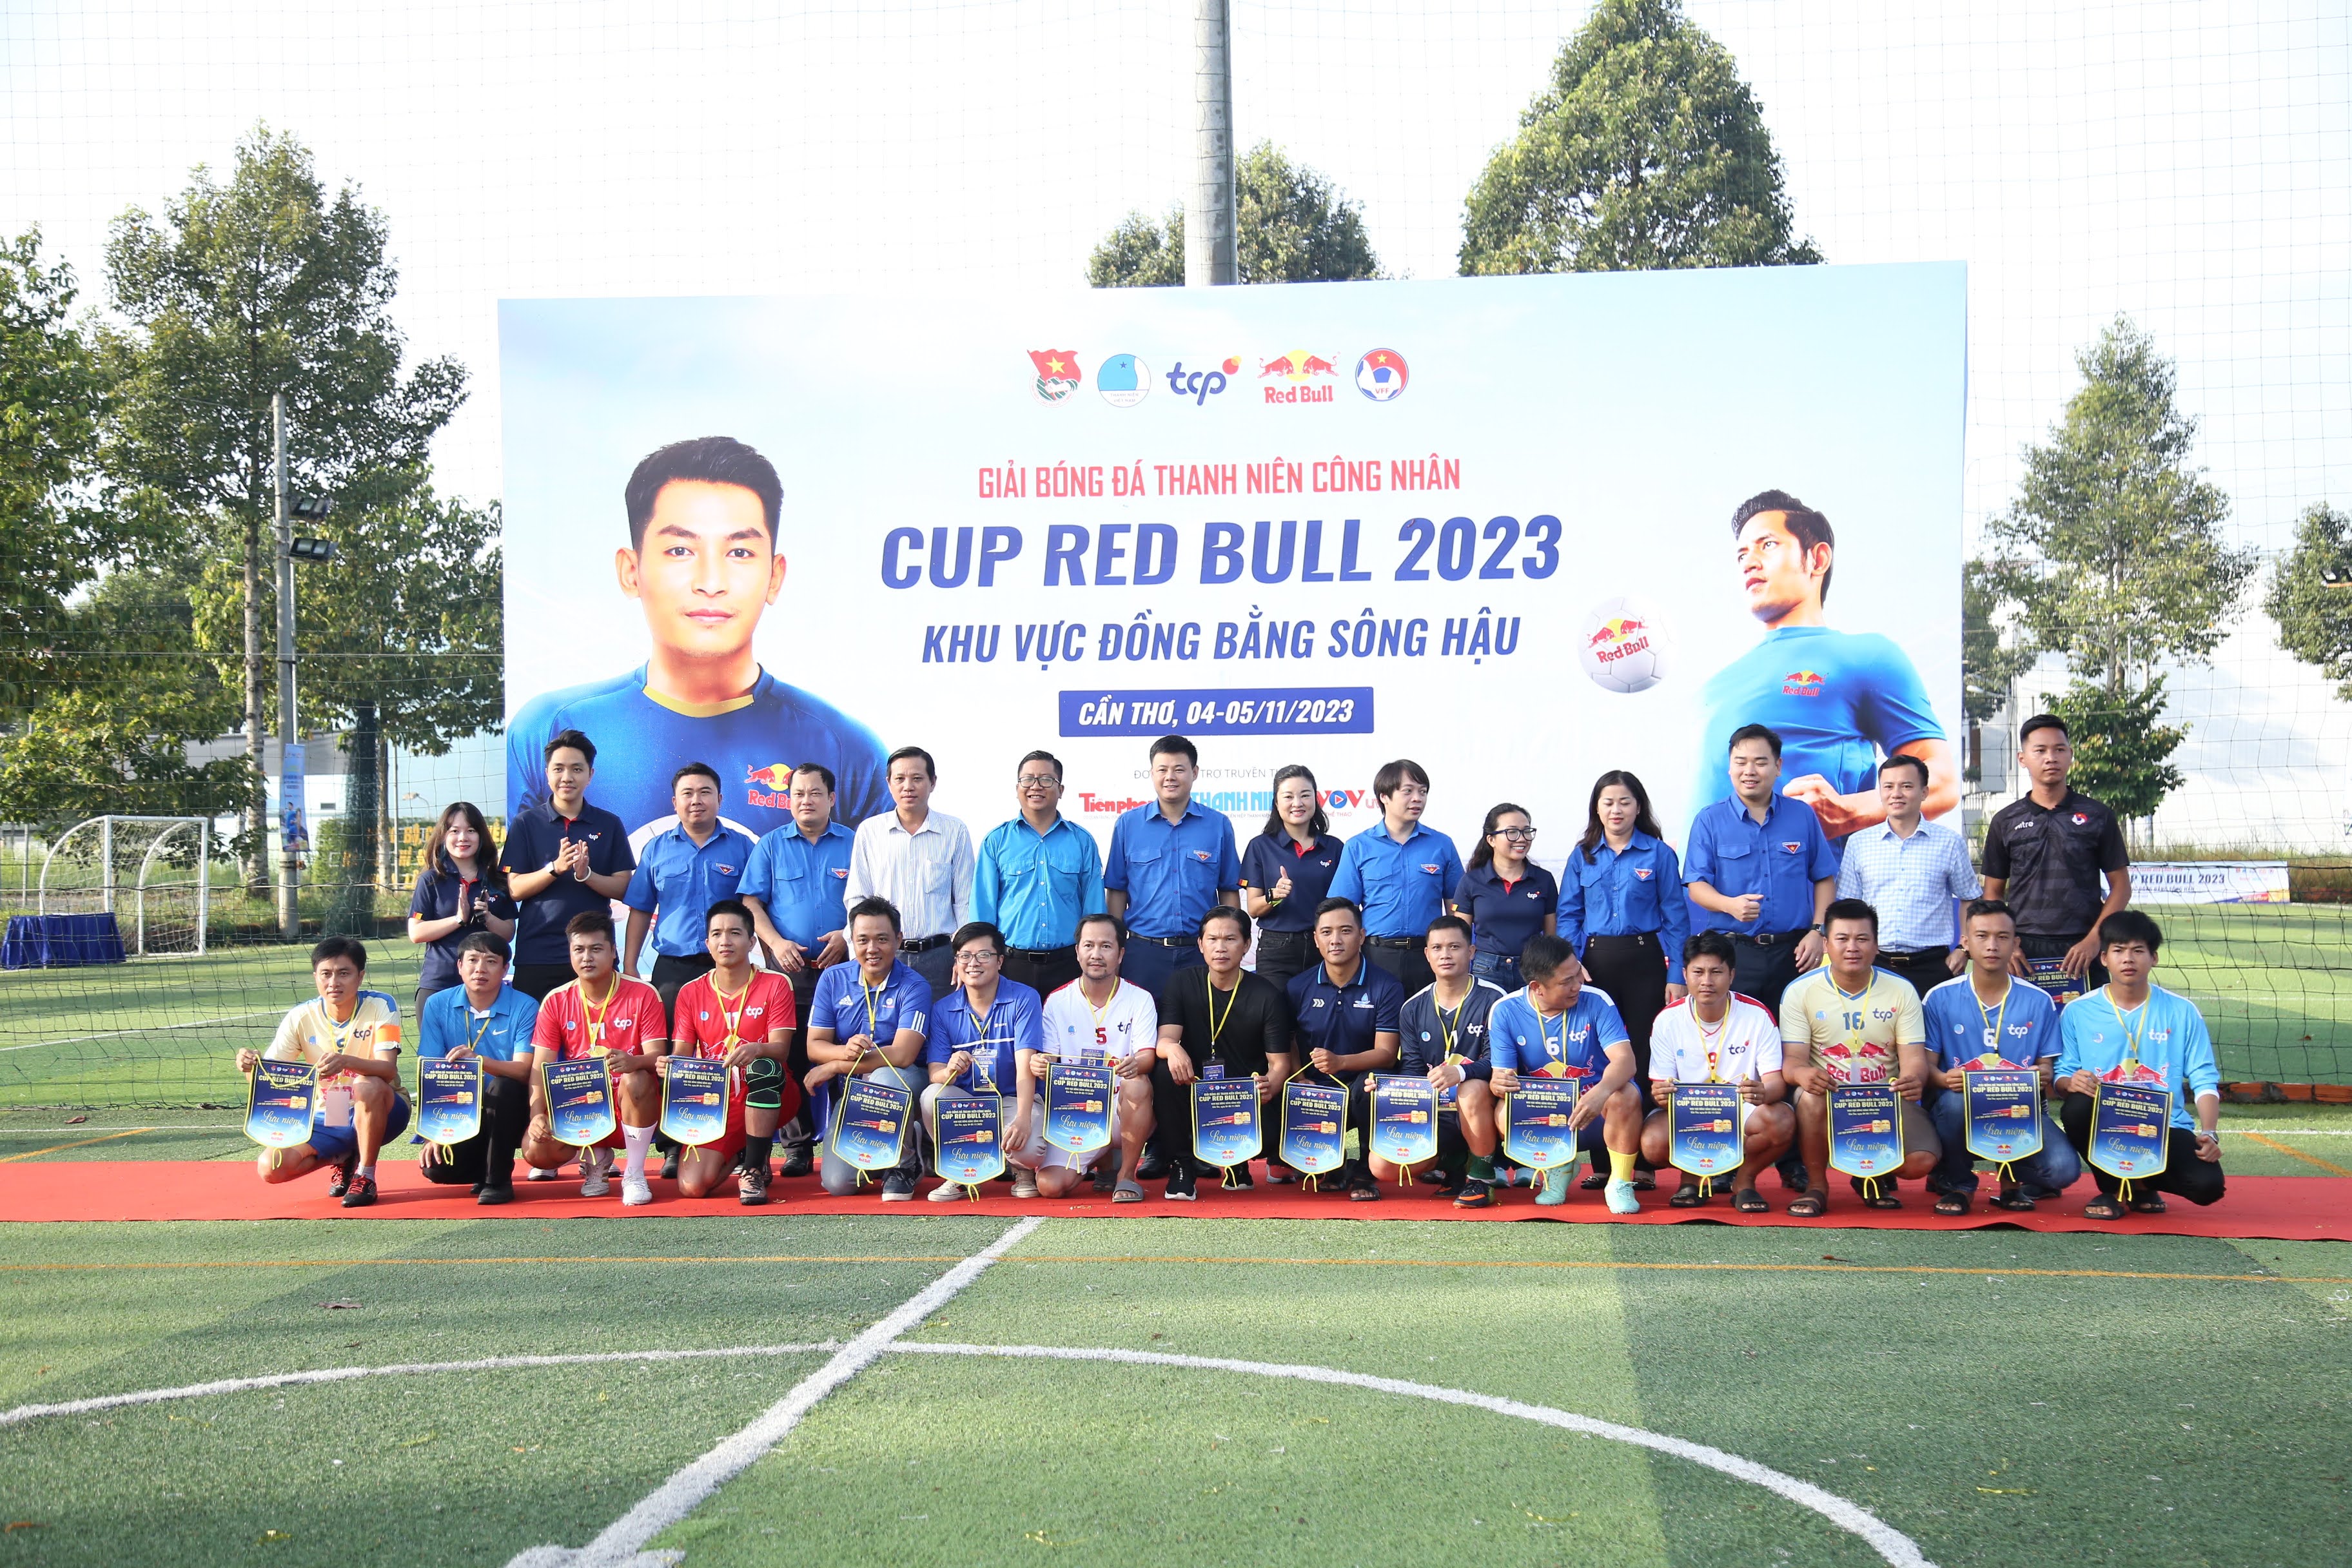 Lễ khai mạc Giải bóng đá nam Thanh niên công nhân cúp Red Bull khu vực Đồng bằng Sông Hậu. Ảnh: BTC